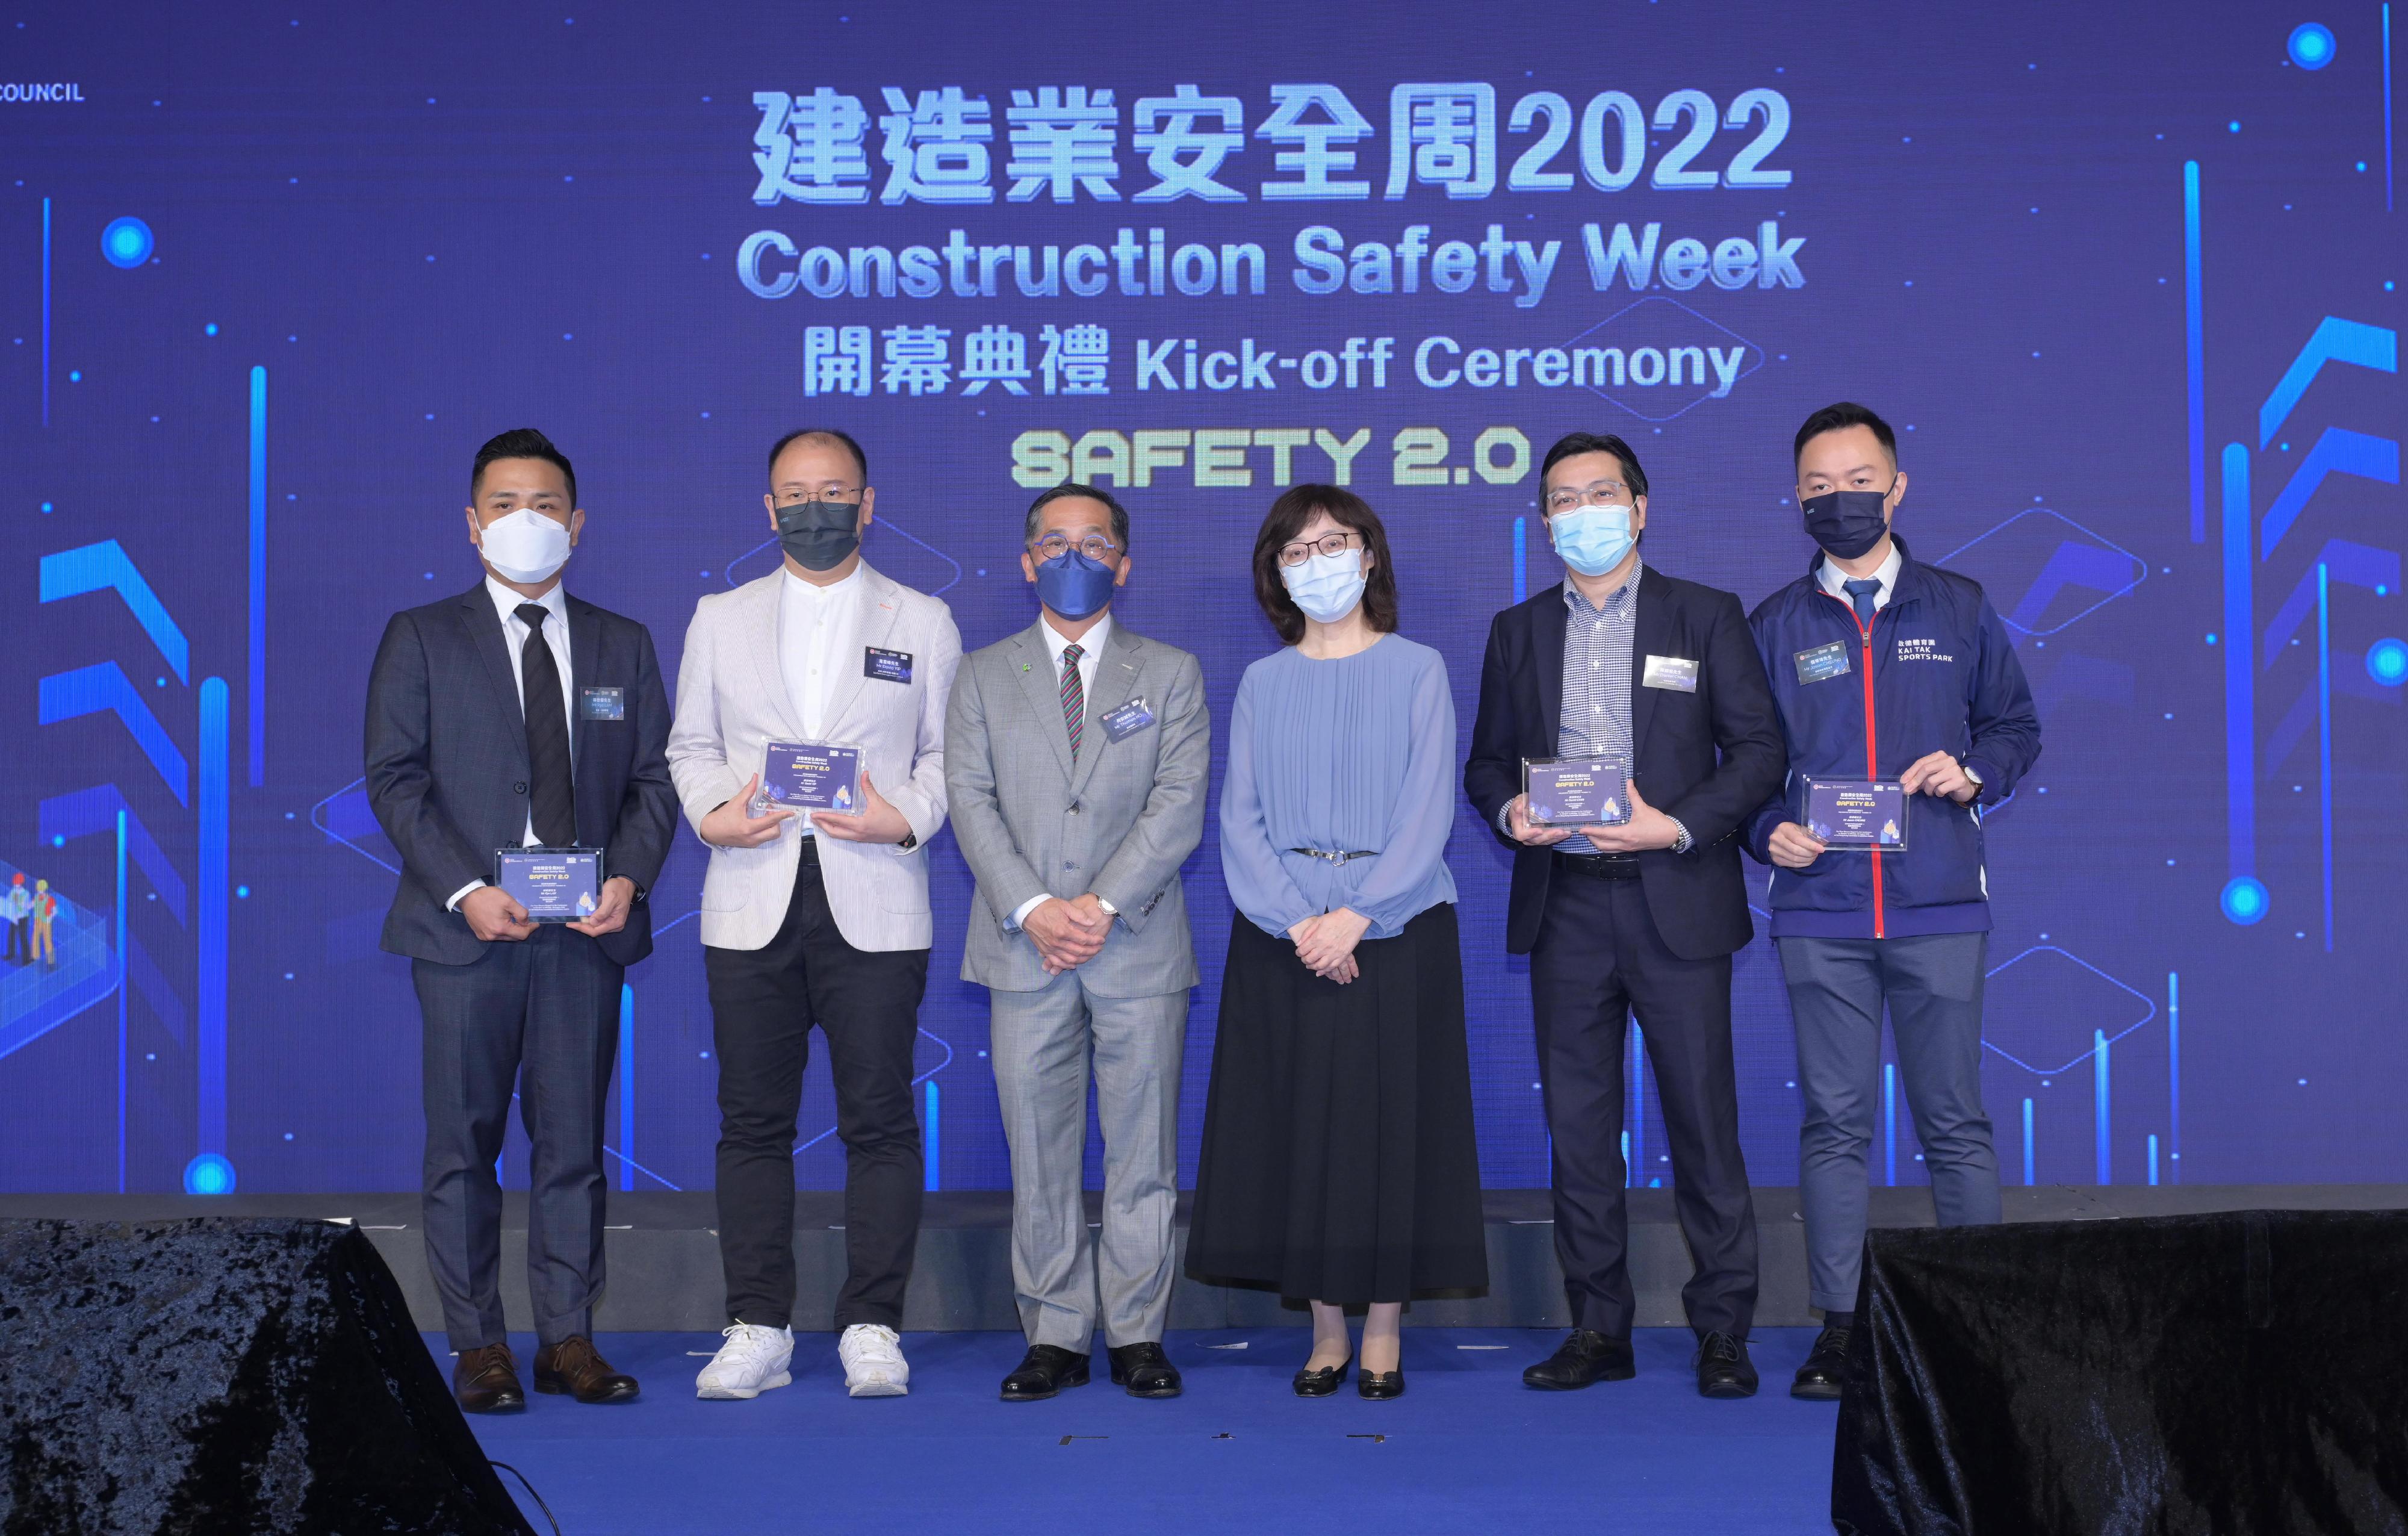 「建造業安全周2022」今日（八月二十九日）至九月二日舉行。圖示發展局局長甯漢豪（右三）和建造業議會主席何安誠（左三）向「建造業安全周2022」的研討會講者致送紀念品。